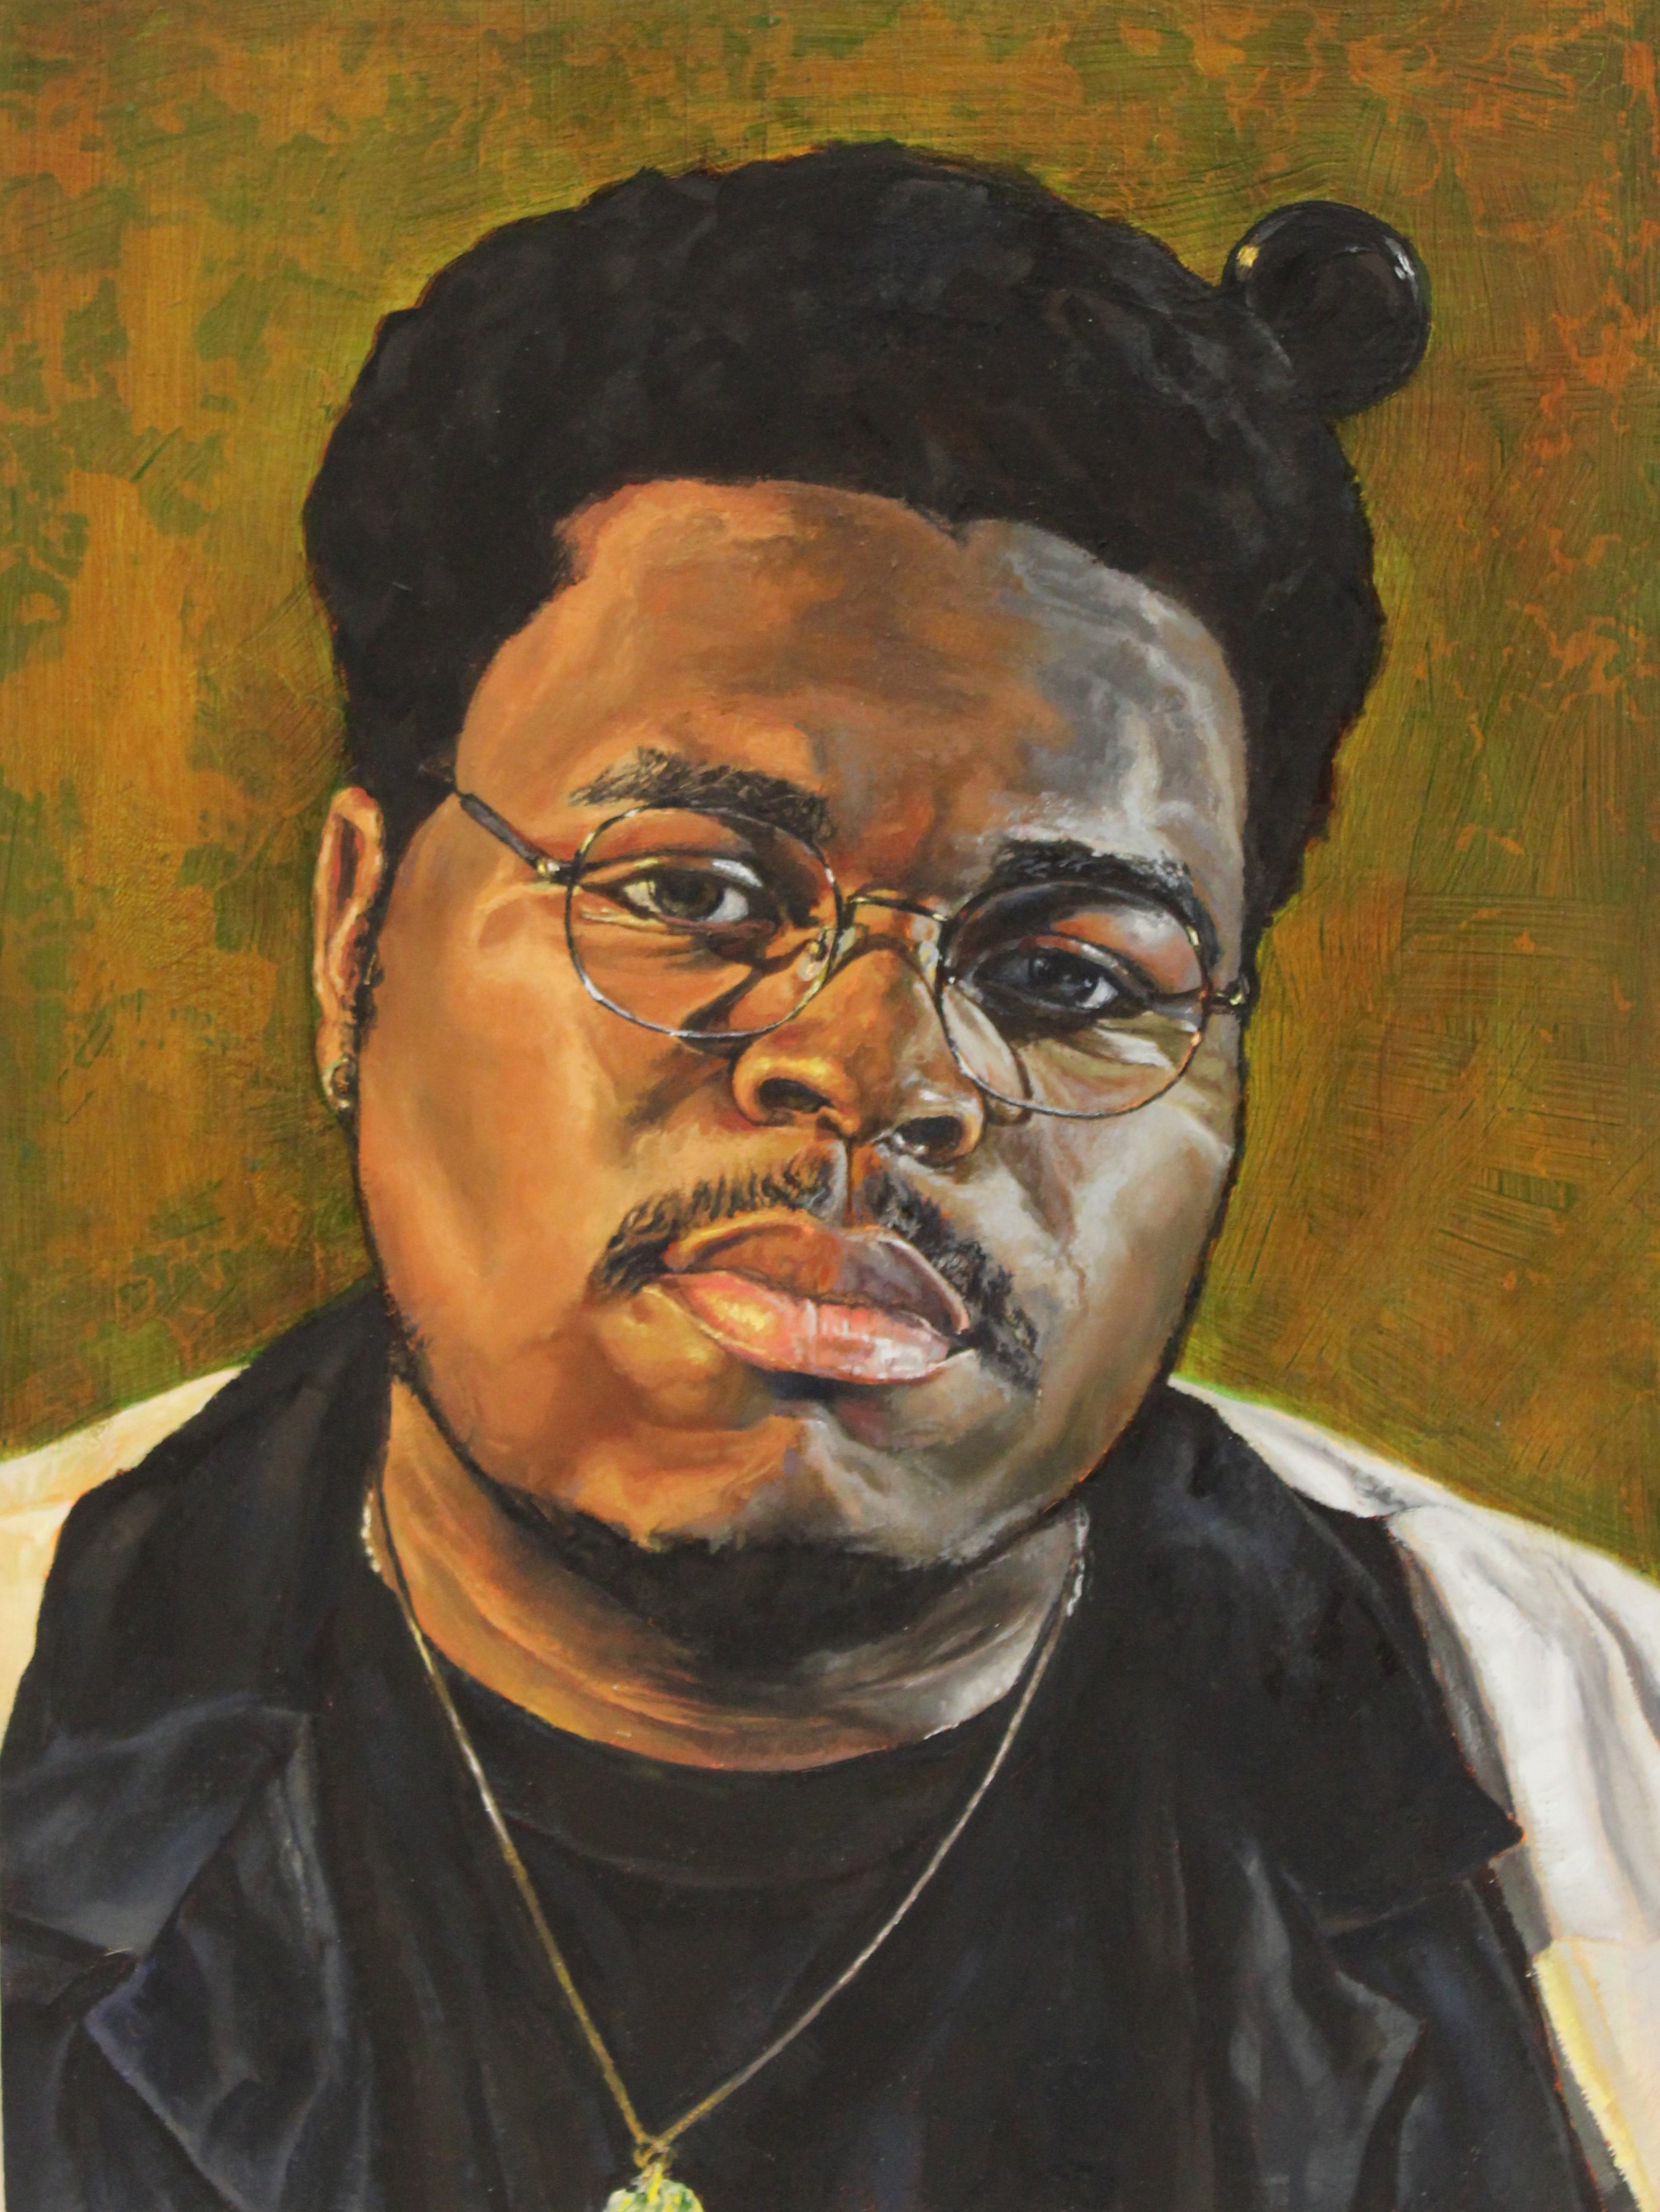 Unique's painting of a black man